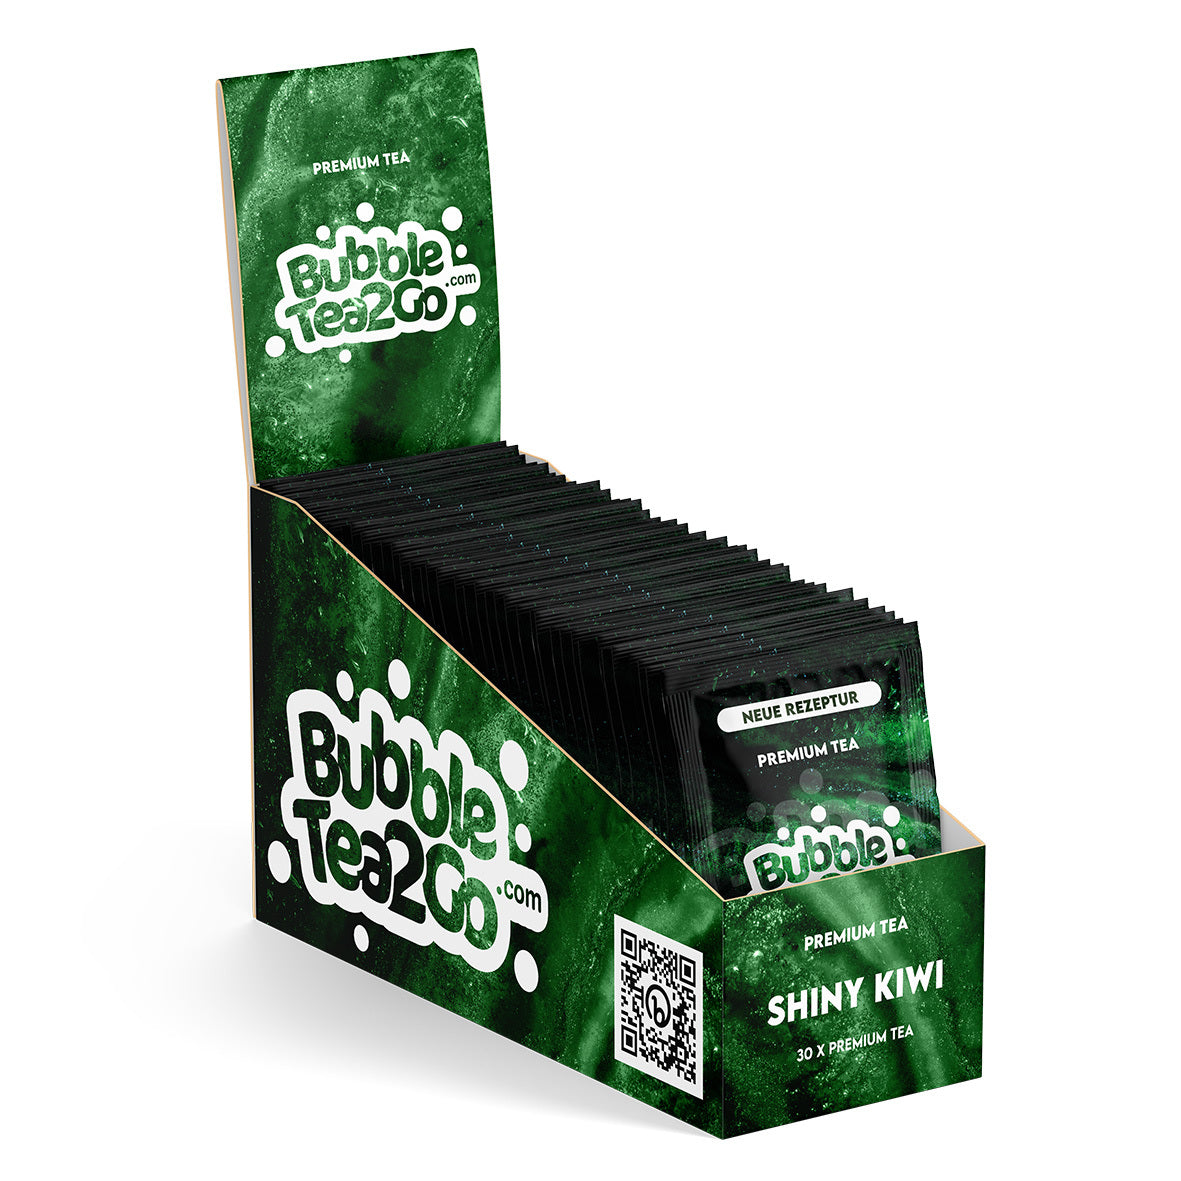 Premium tea advantage box - Shiny Kiwi (30 pcs.)